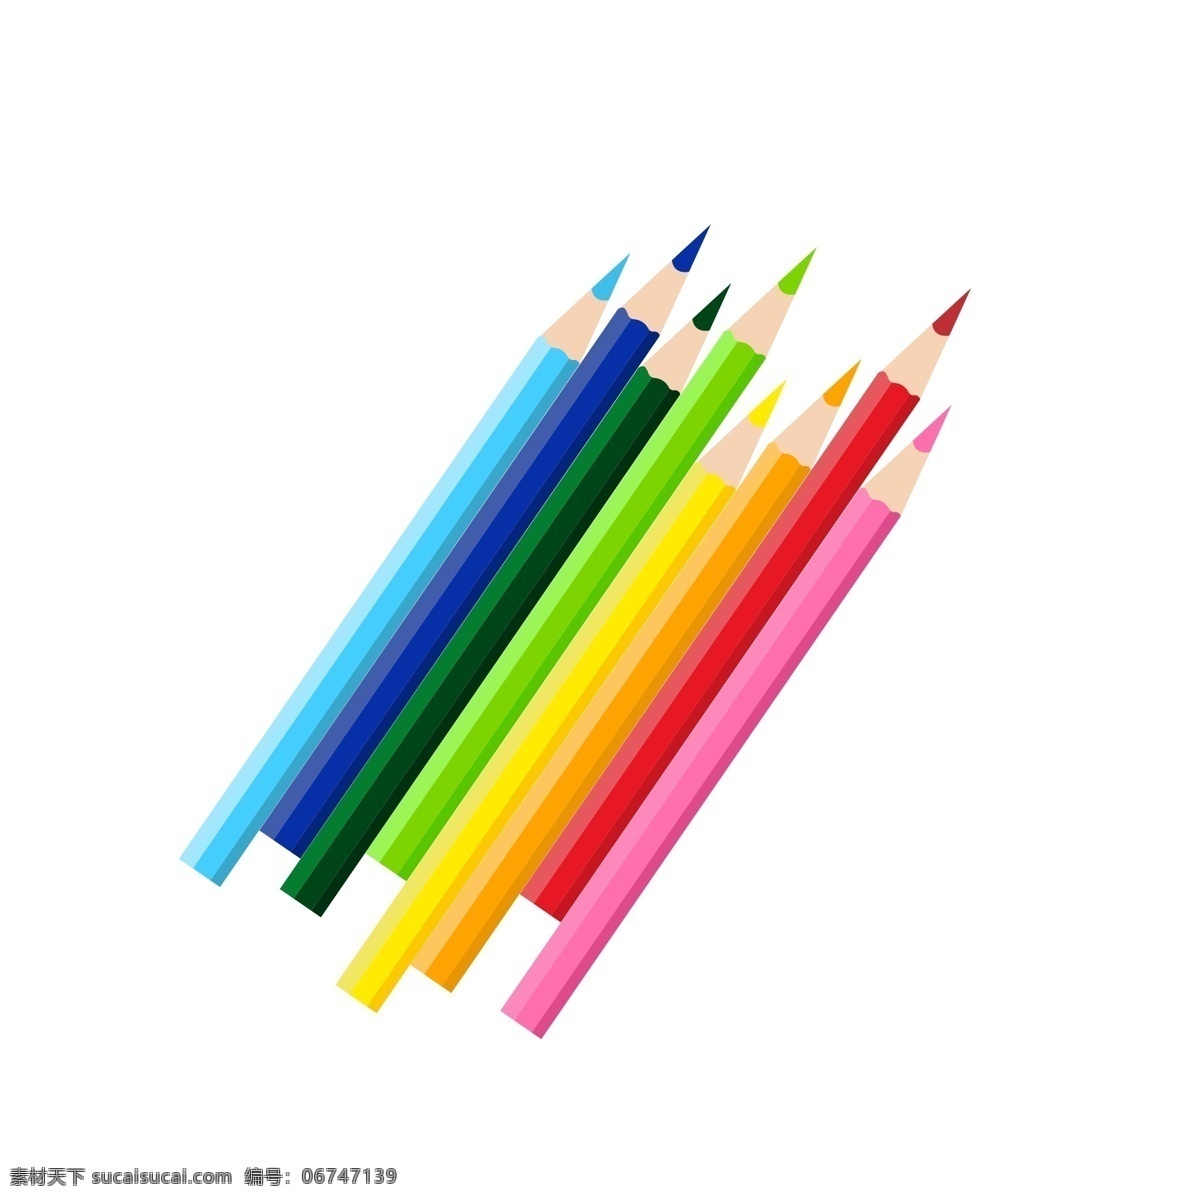 文具用品 彩色 铅笔 儿童文具用品 不 带 橡皮 卡通手绘 学习用具 红色铅笔